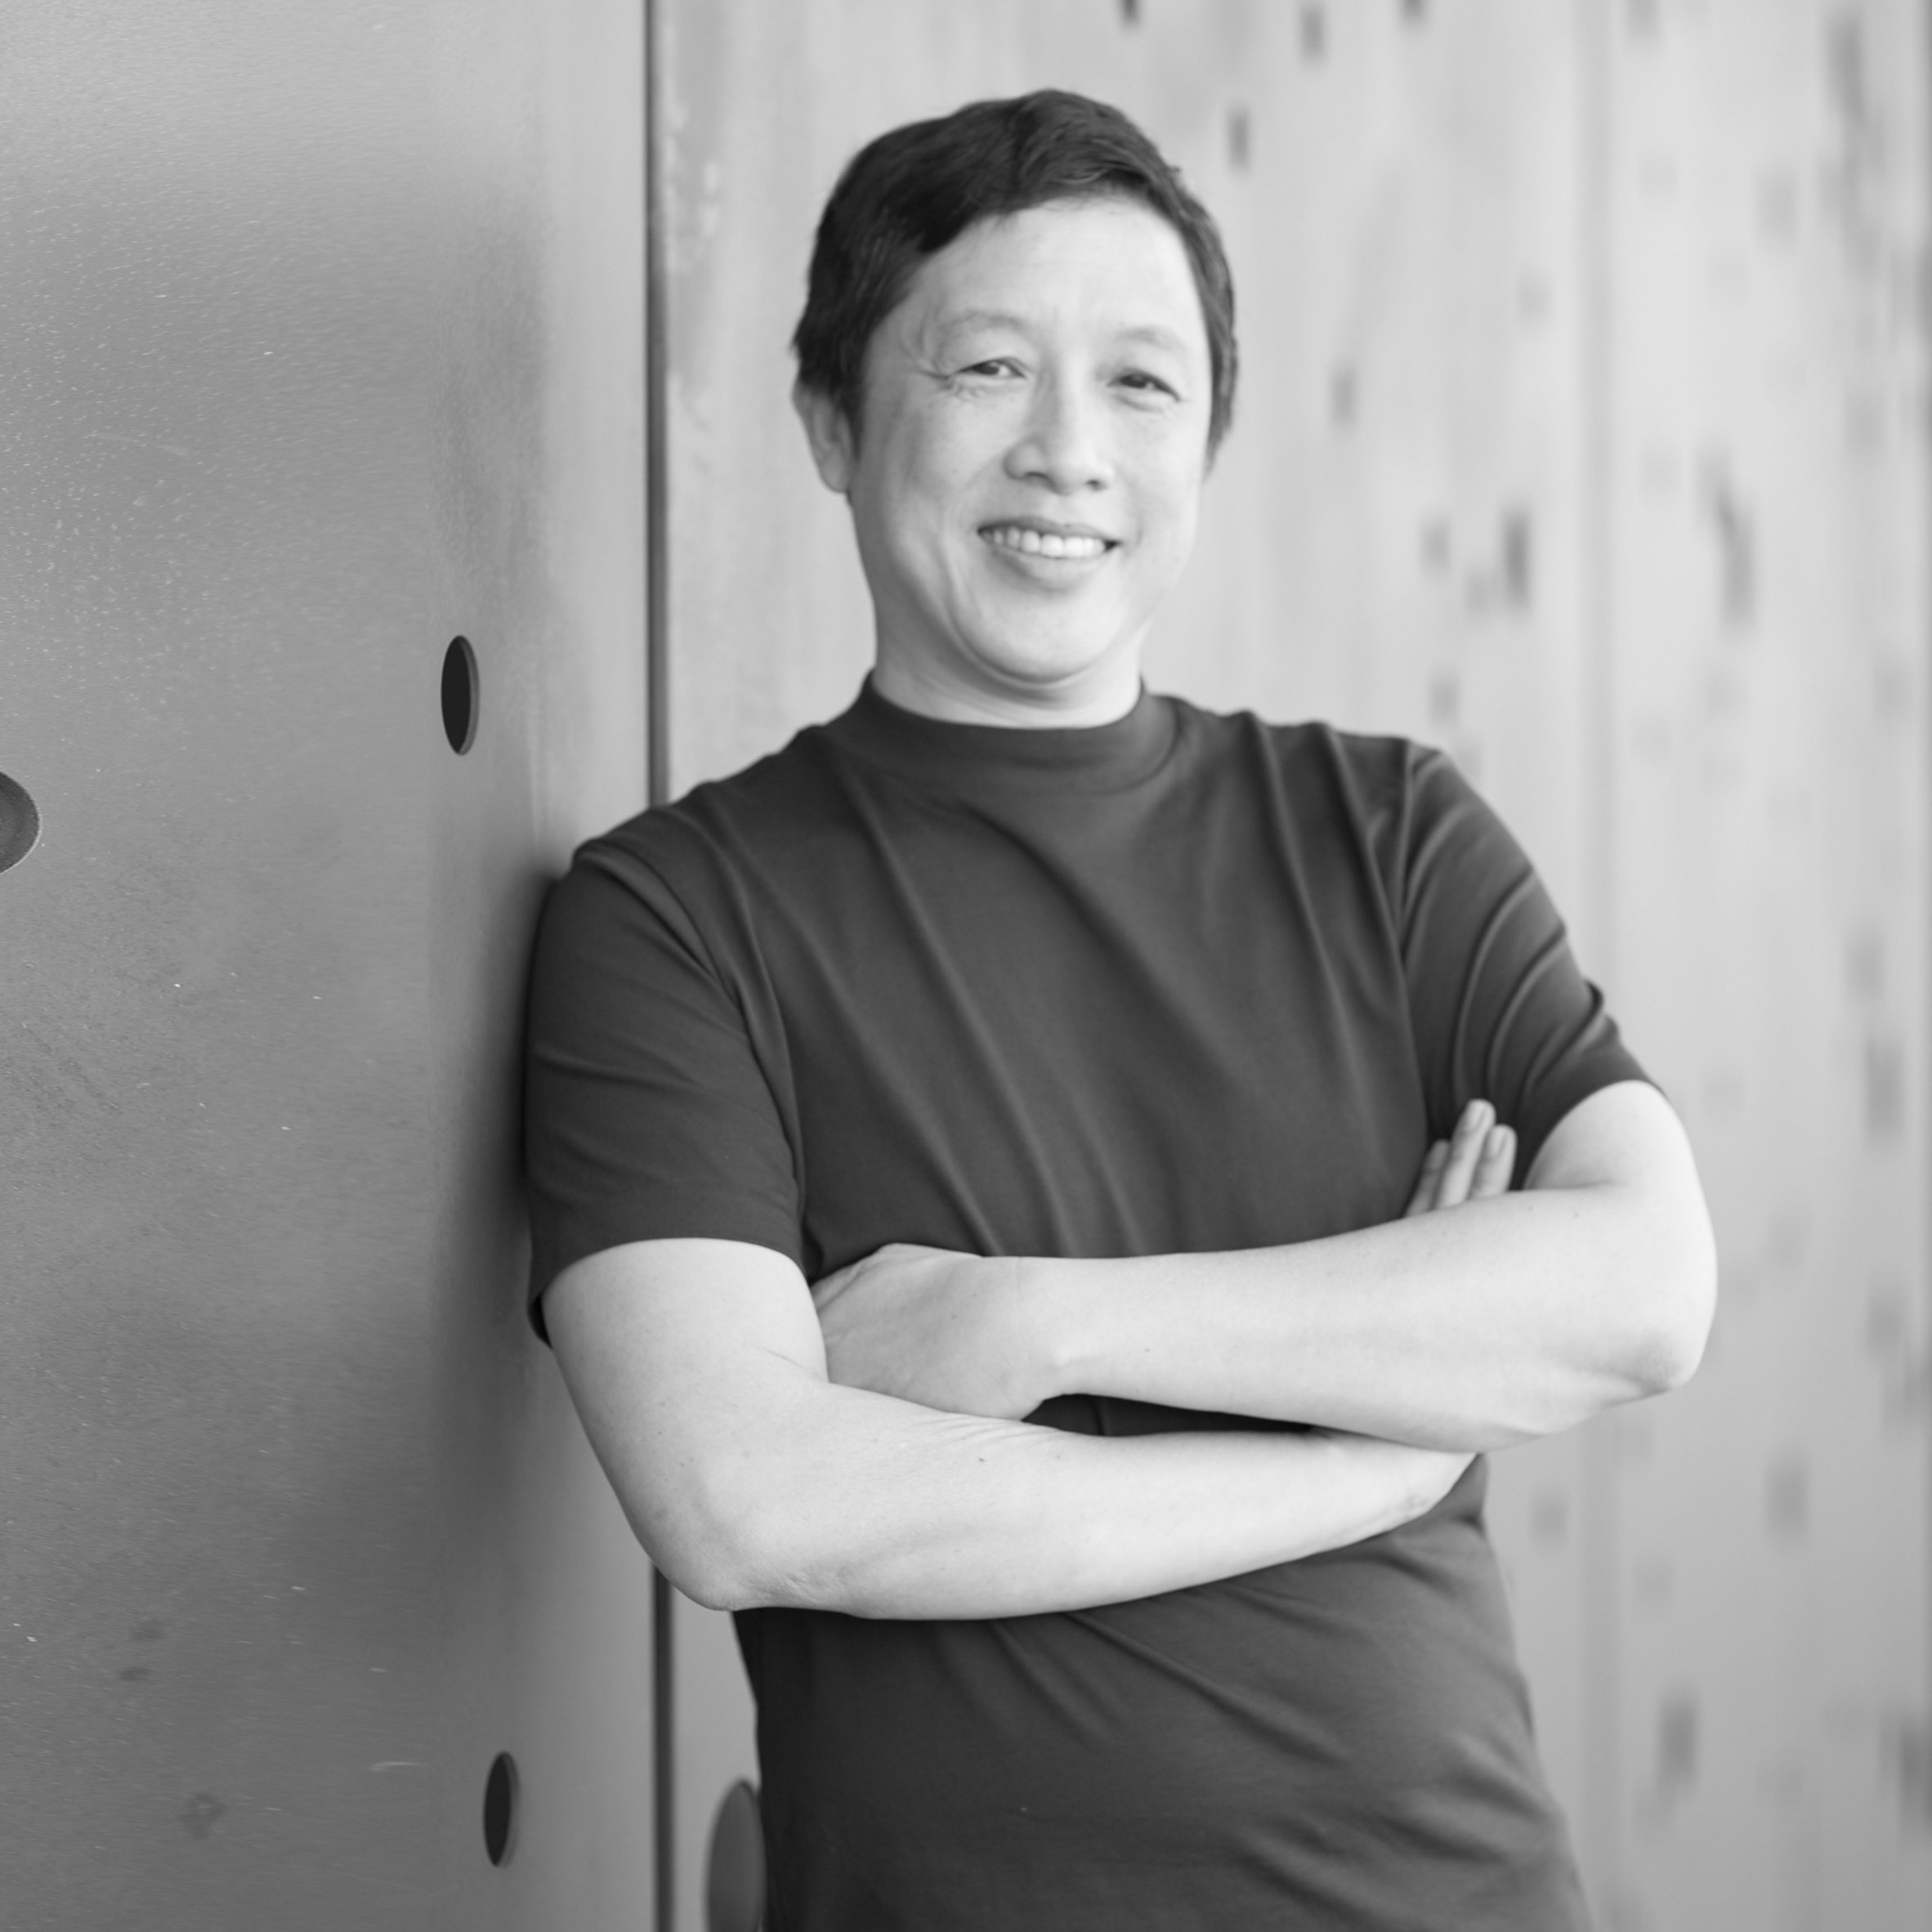 Kohler vice president of industrial design Lun Cheak Tan